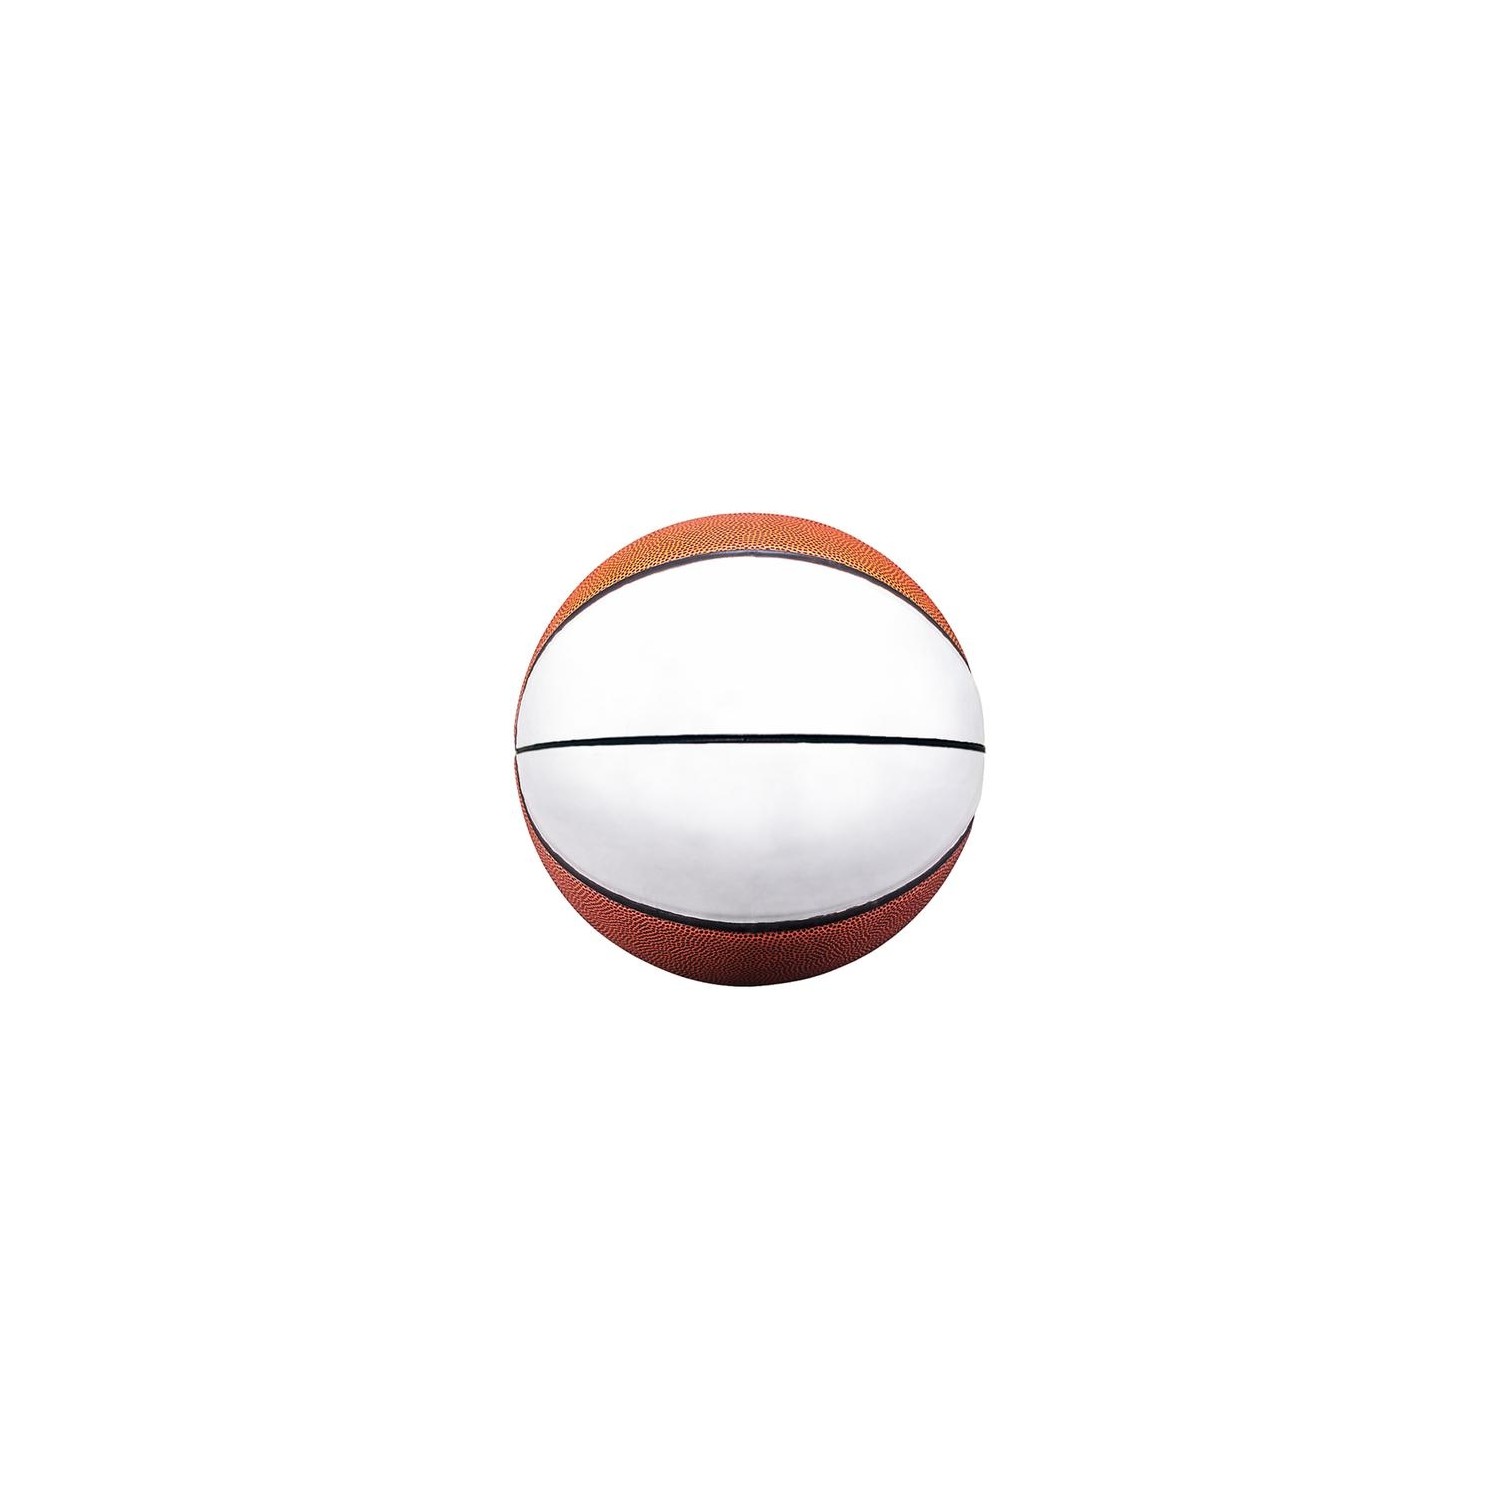 Balón de Basketball número 7 ALTO GOMA